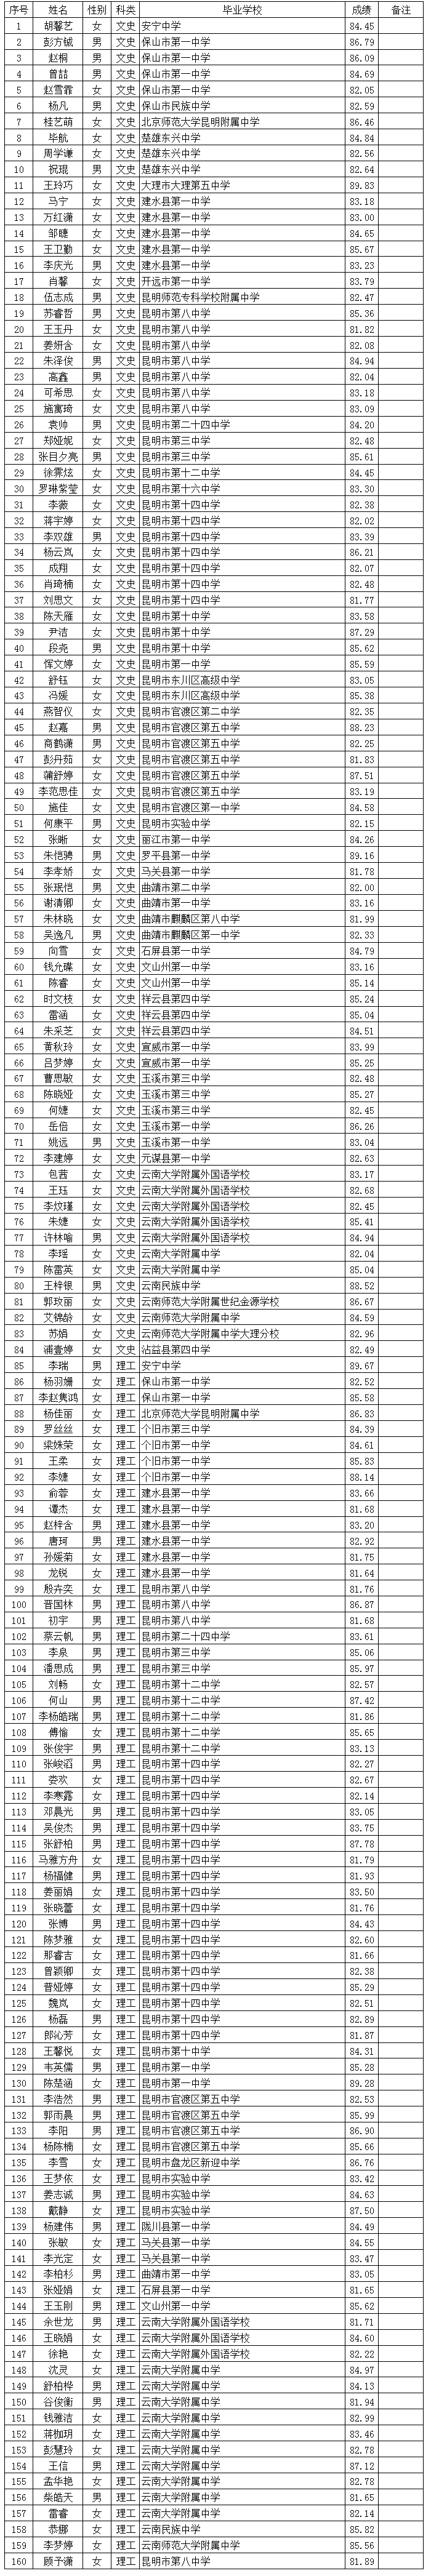 云南大学2012年自主选拔录取测试合格考生公示名单